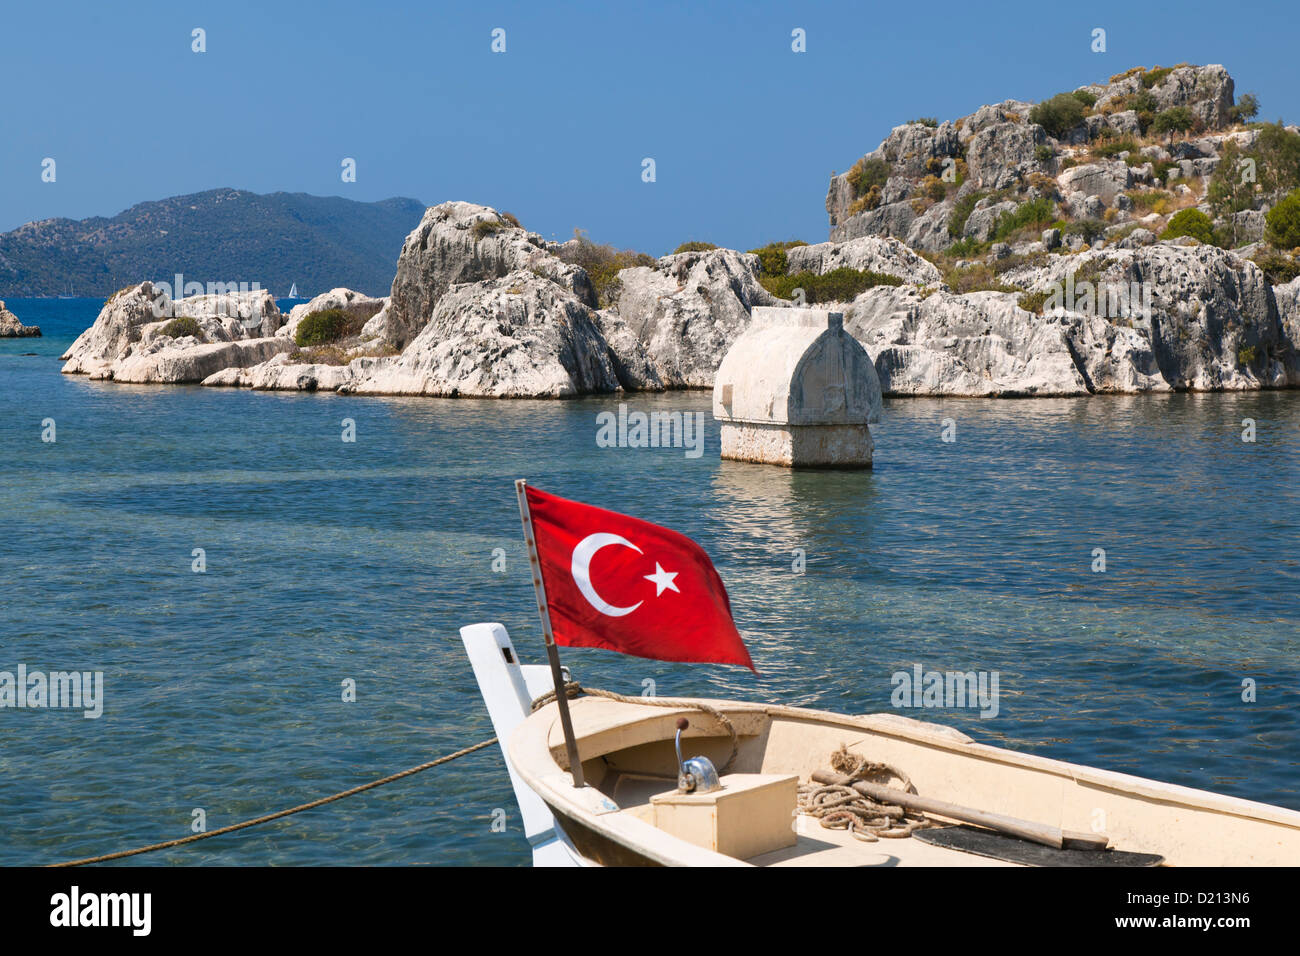 Bateau avec drapeau turc, sarcophage, Simena, Kalekoy, côte lycienne, Mer Méditerranée, Turquie Banque D'Images